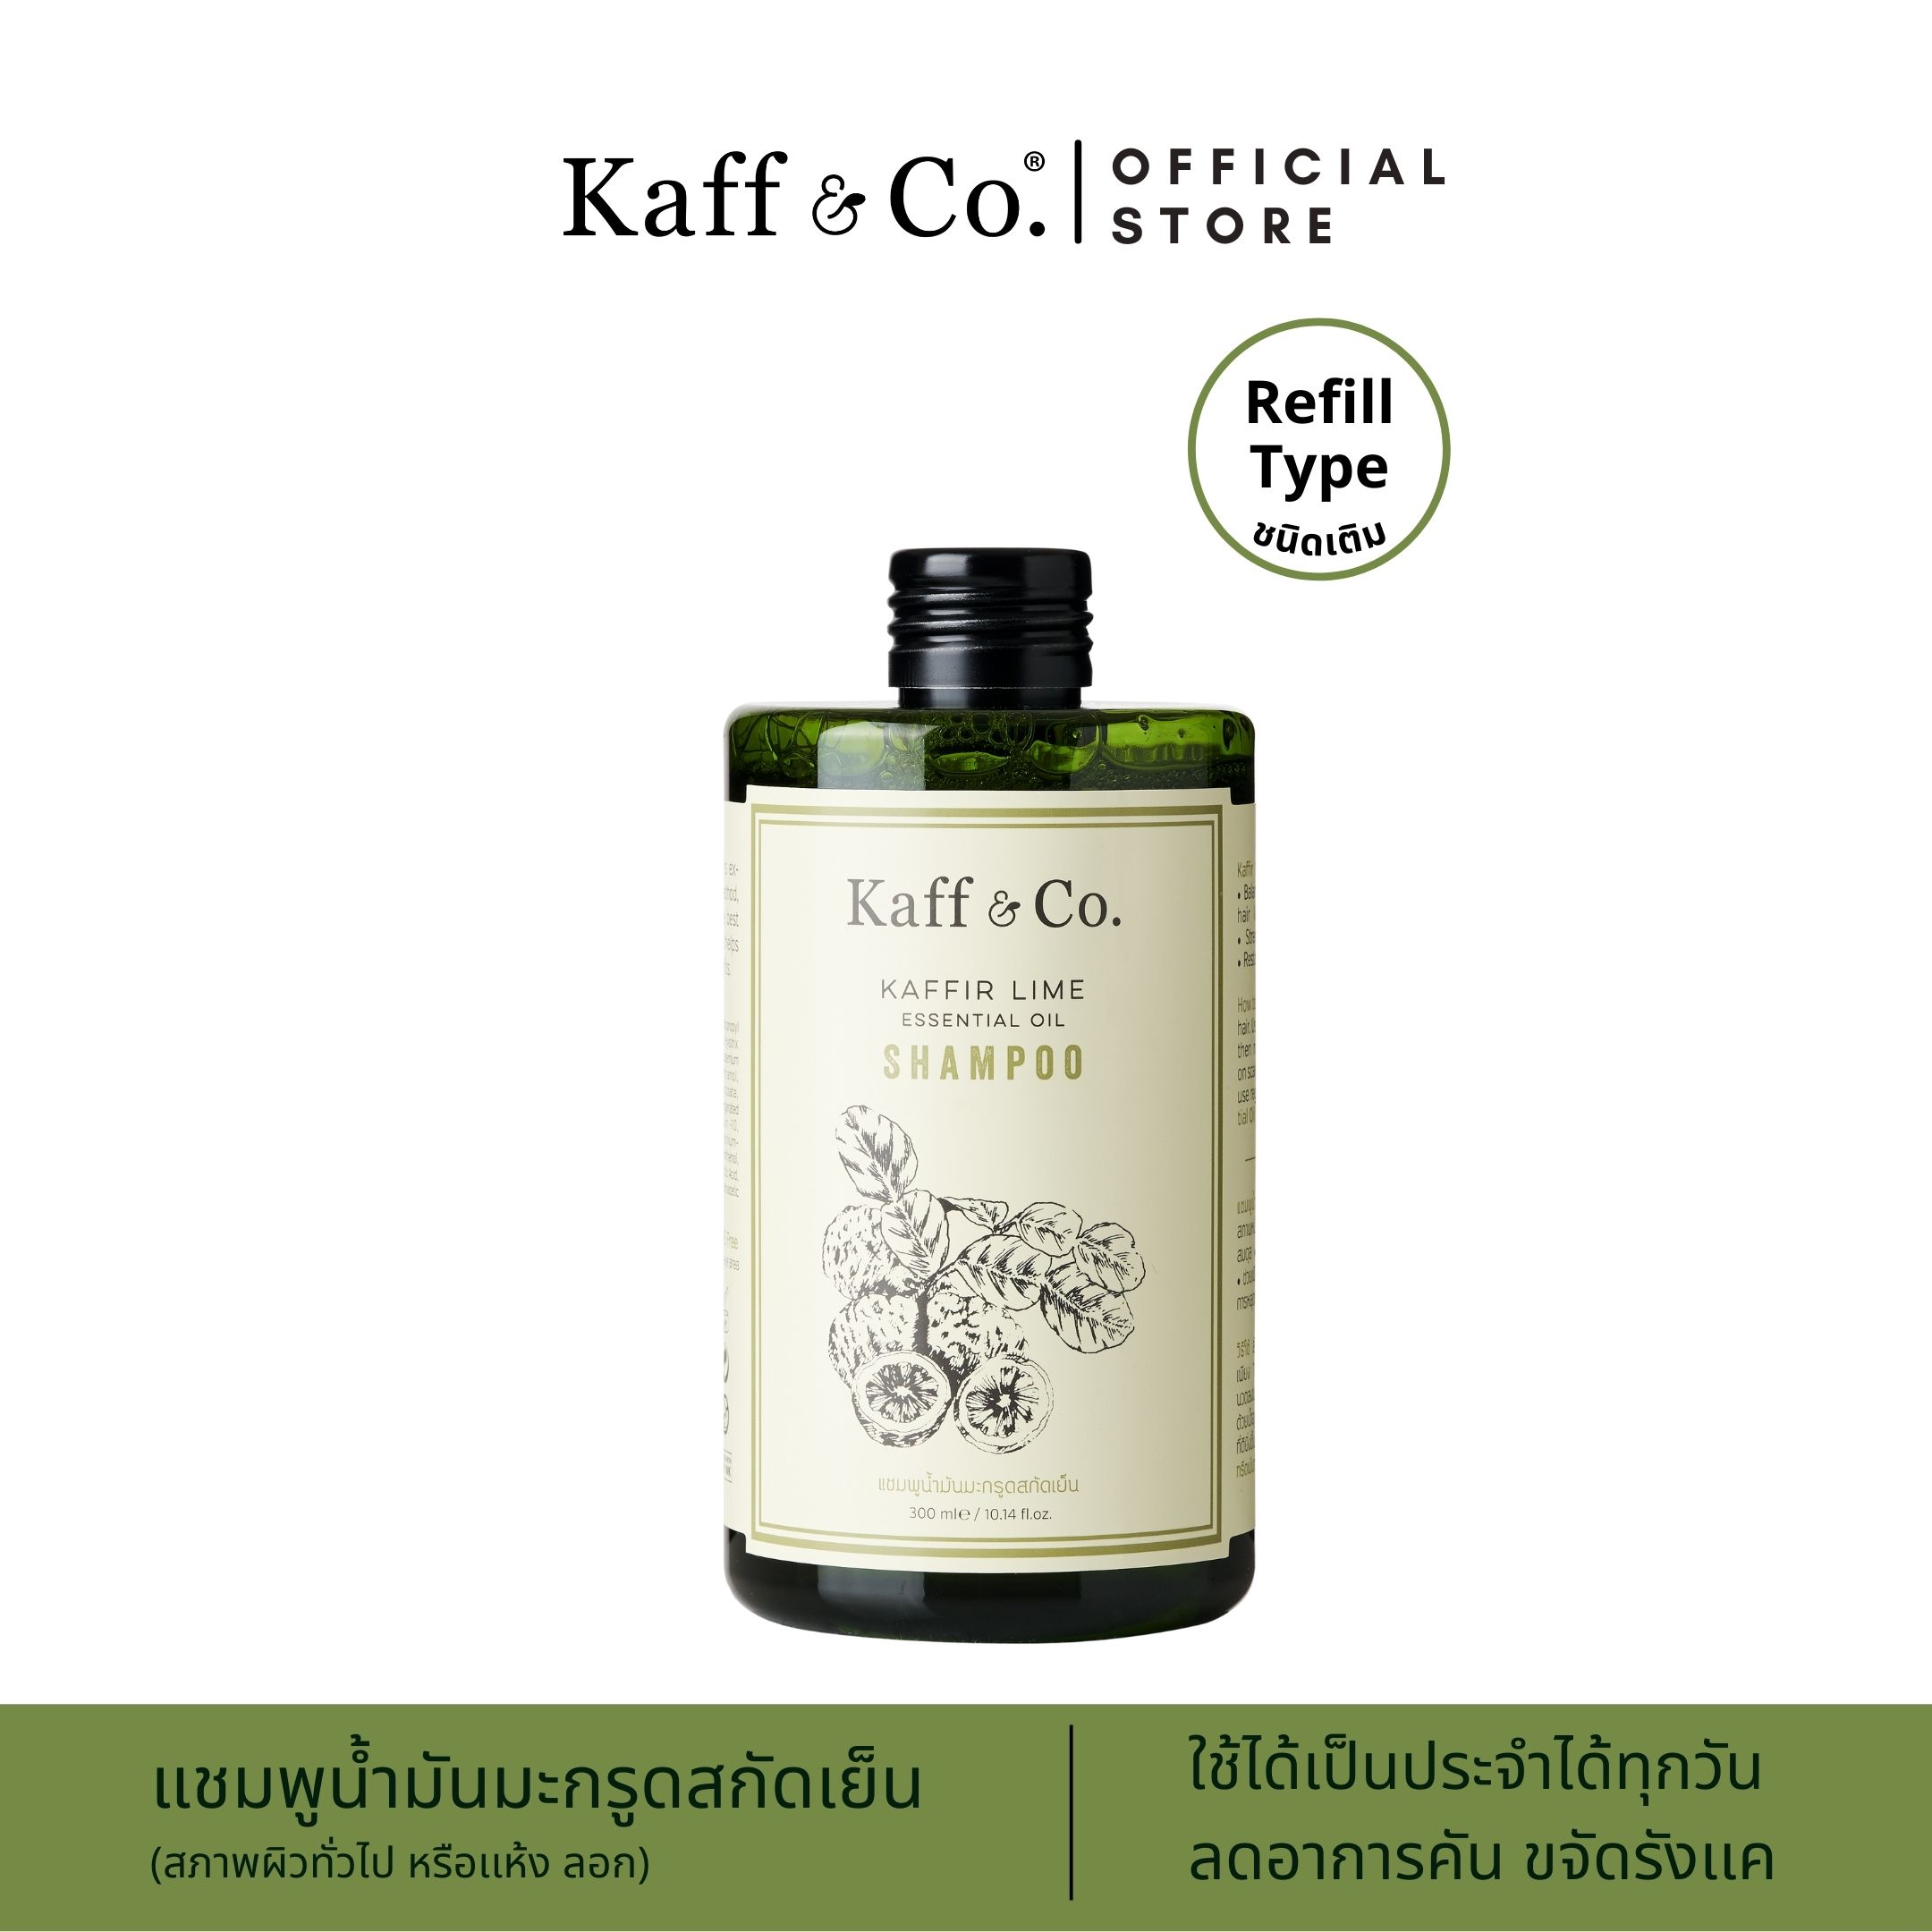 รีวิว Kaff & Co. Kaffir Lime Essential Oil Shampoo 300ml แชมพูน้ำมันมะกรูดสกัดเย็น (ชนิดเติม) สำหรับหนังศีรษะแห้ง คัน มีรังแค สระผมทุกวัน